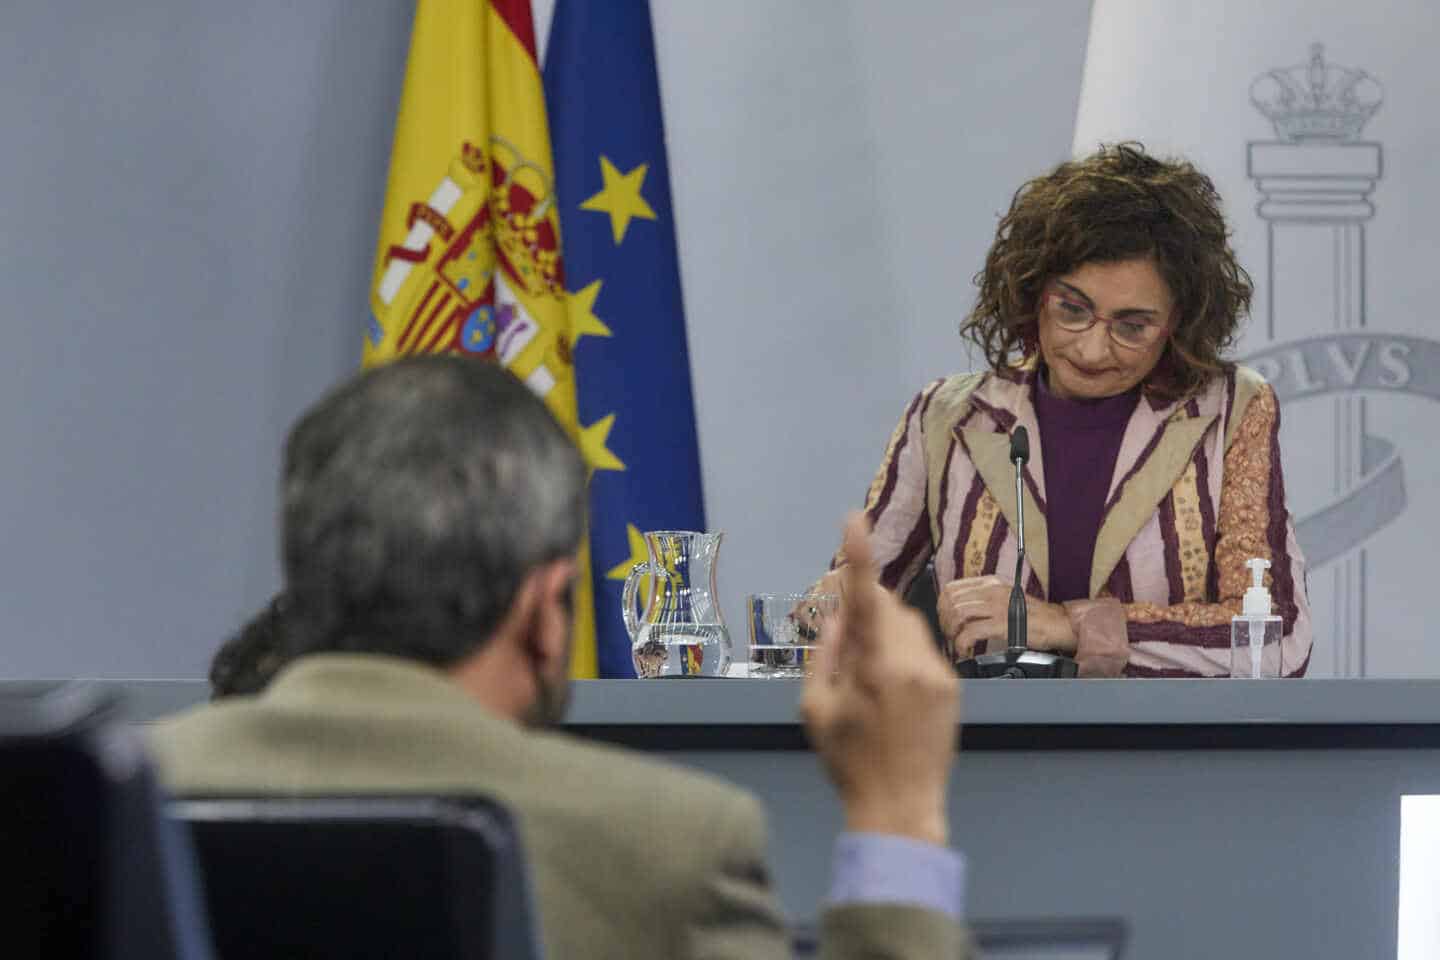 La ministra de Hacienda y portavoz del Gobierno, María Jesús Montero, interviene en una rueda de prensa tras una reunión del Consejo de Ministros.